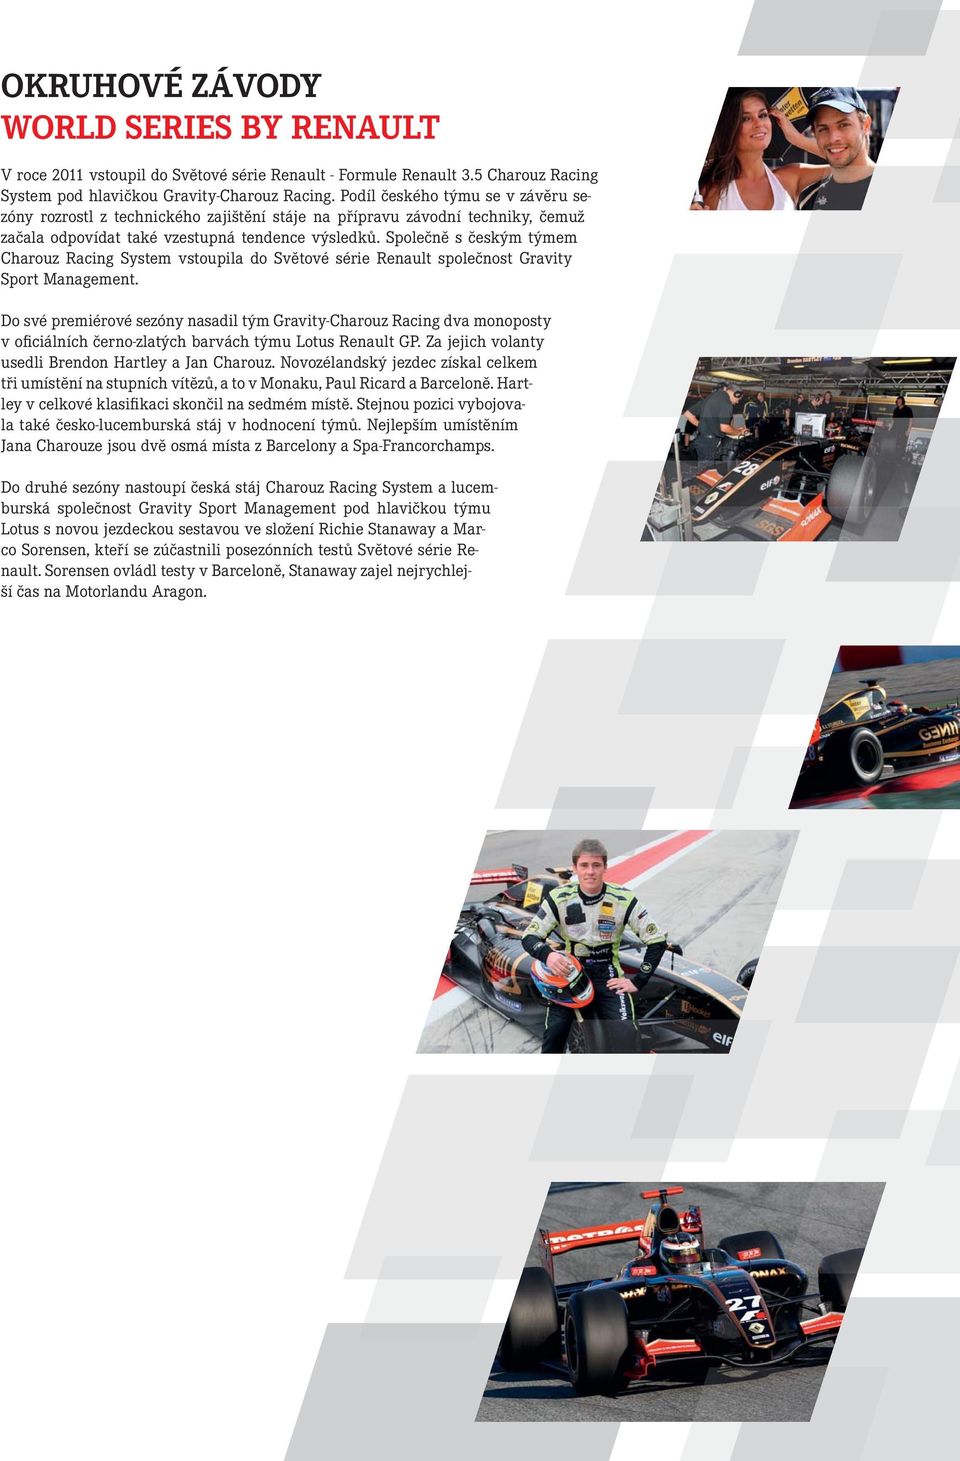 Společně s českým týmem Charouz Racing System vstoupila do Světové série Renault společnost Gravity Sport Management.